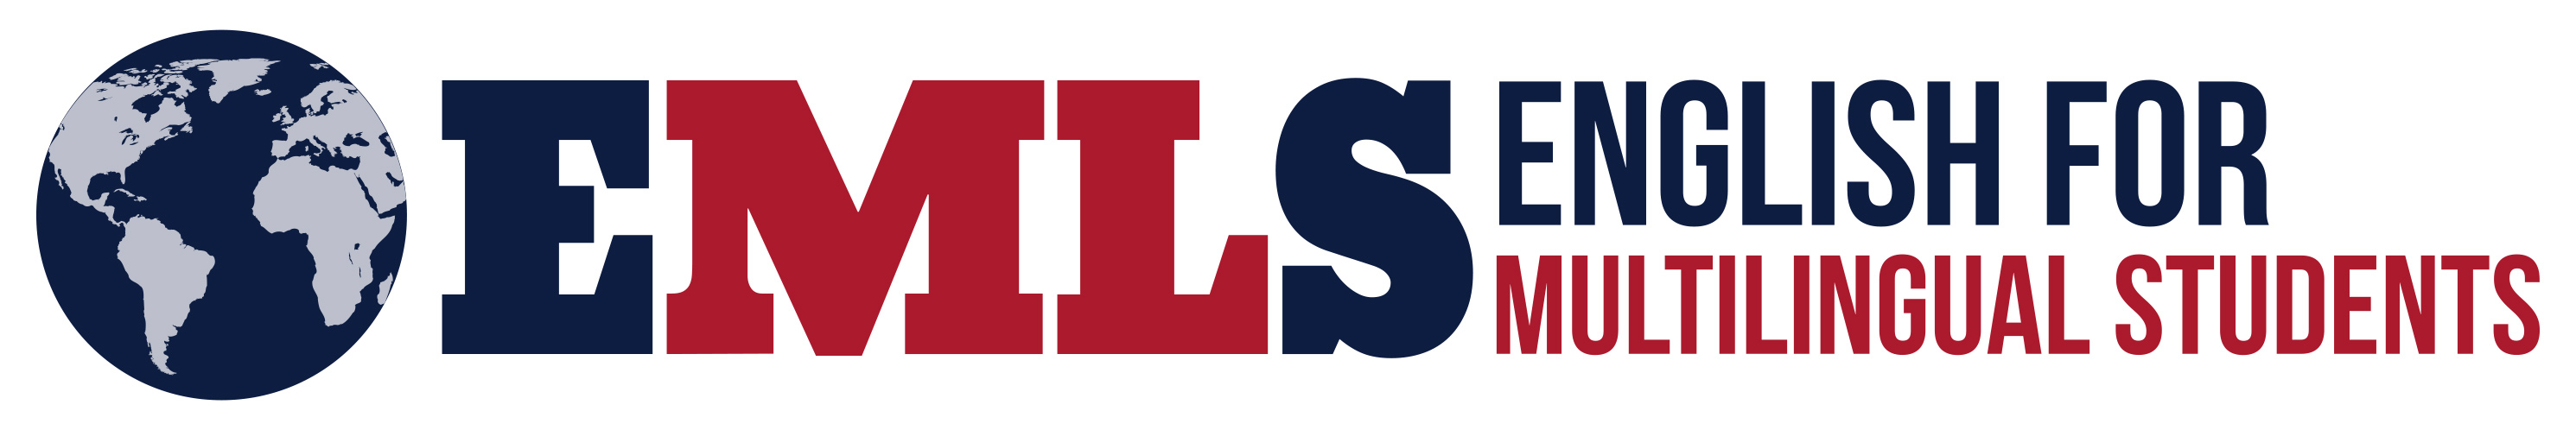 EMLS logo